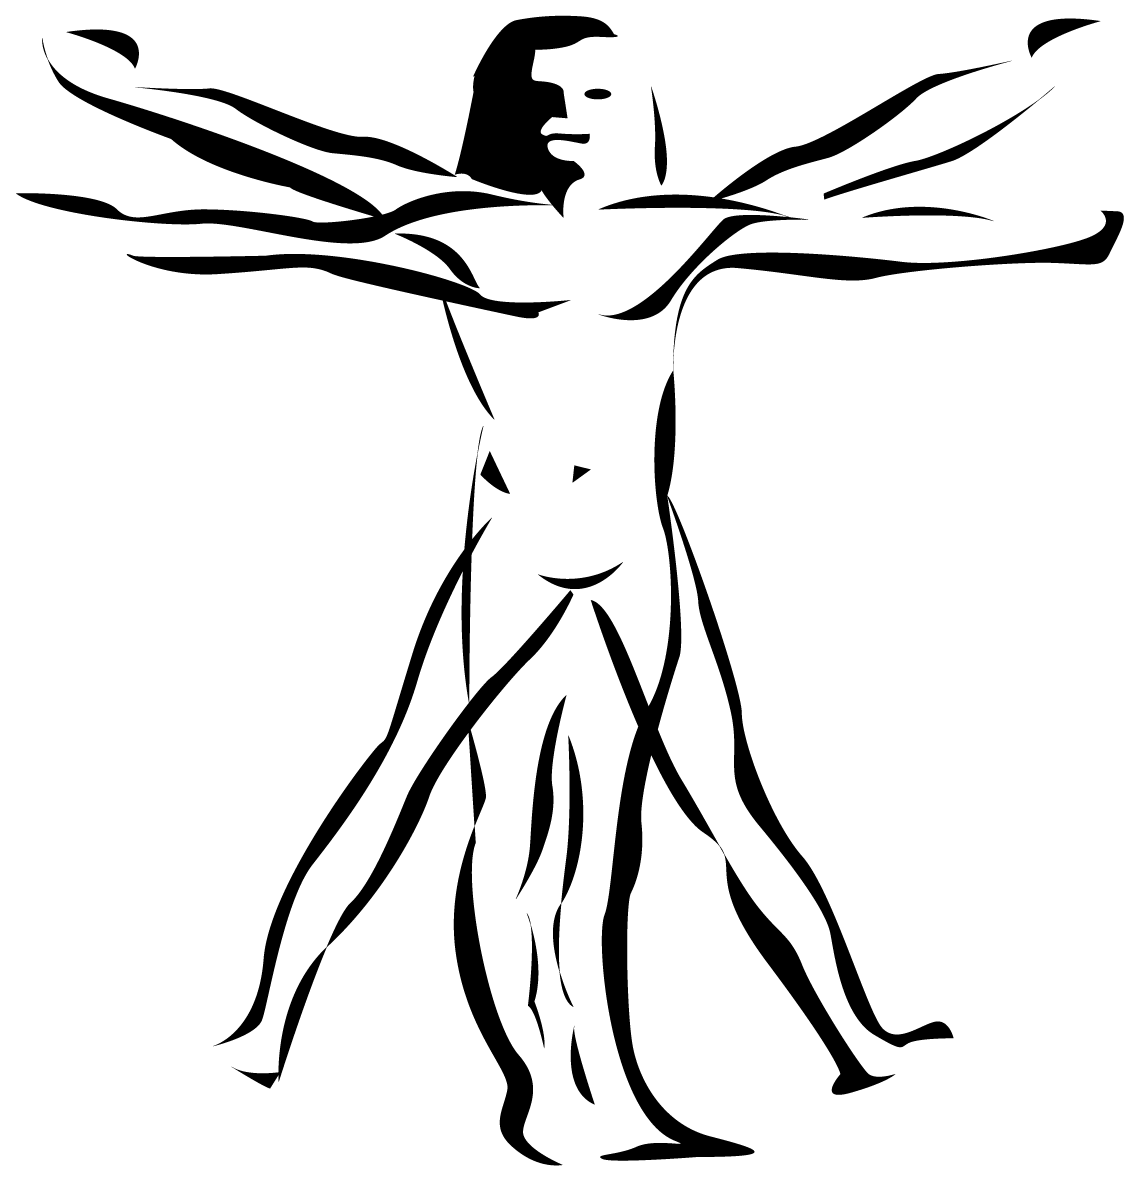 Logo noir d'Innovia présentant une figure humaine stylisée avec les bras écartés, incarnant le réseau logistique étendu de l'entreprise.